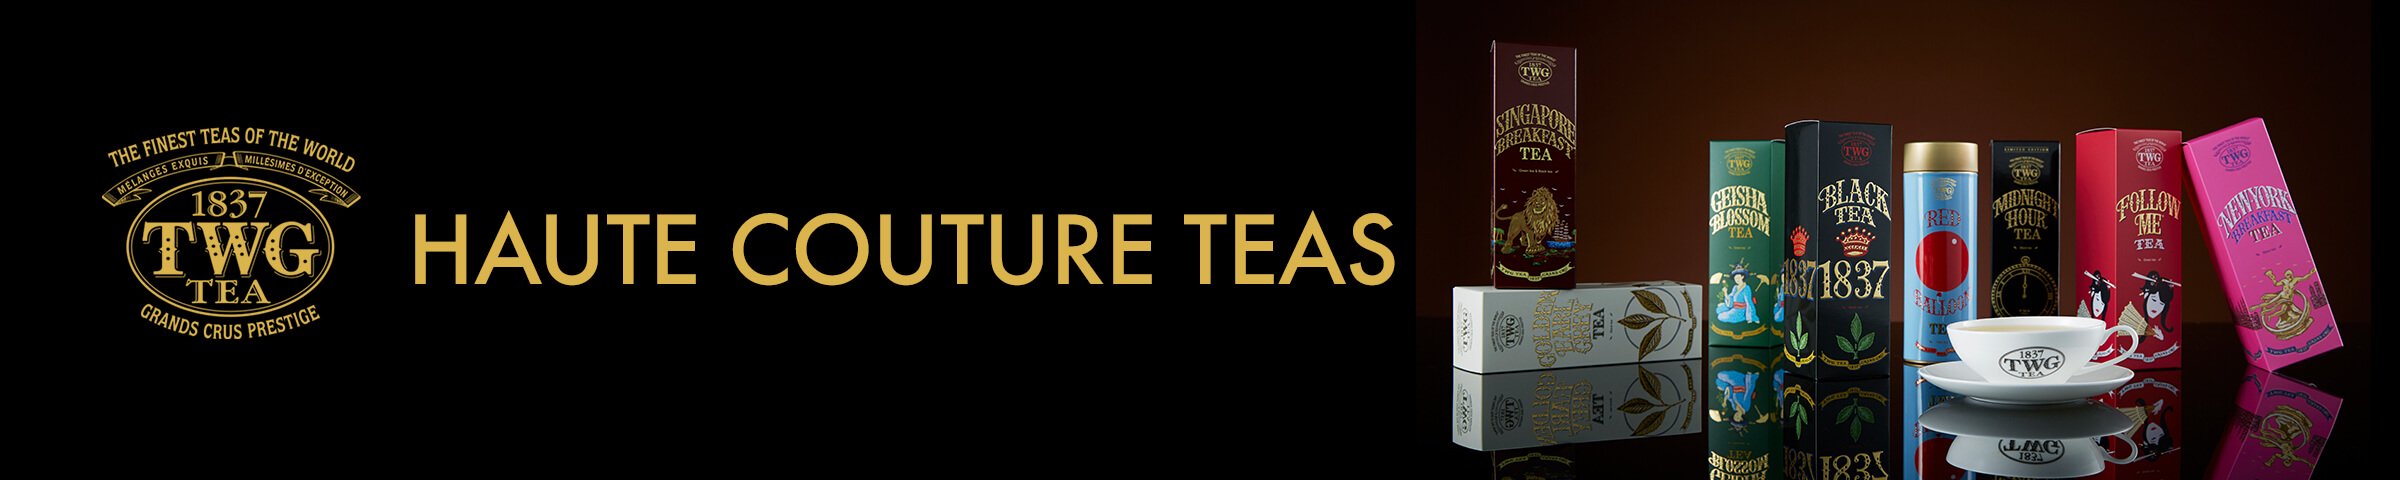 TWG Tea - Haute Couture Teas